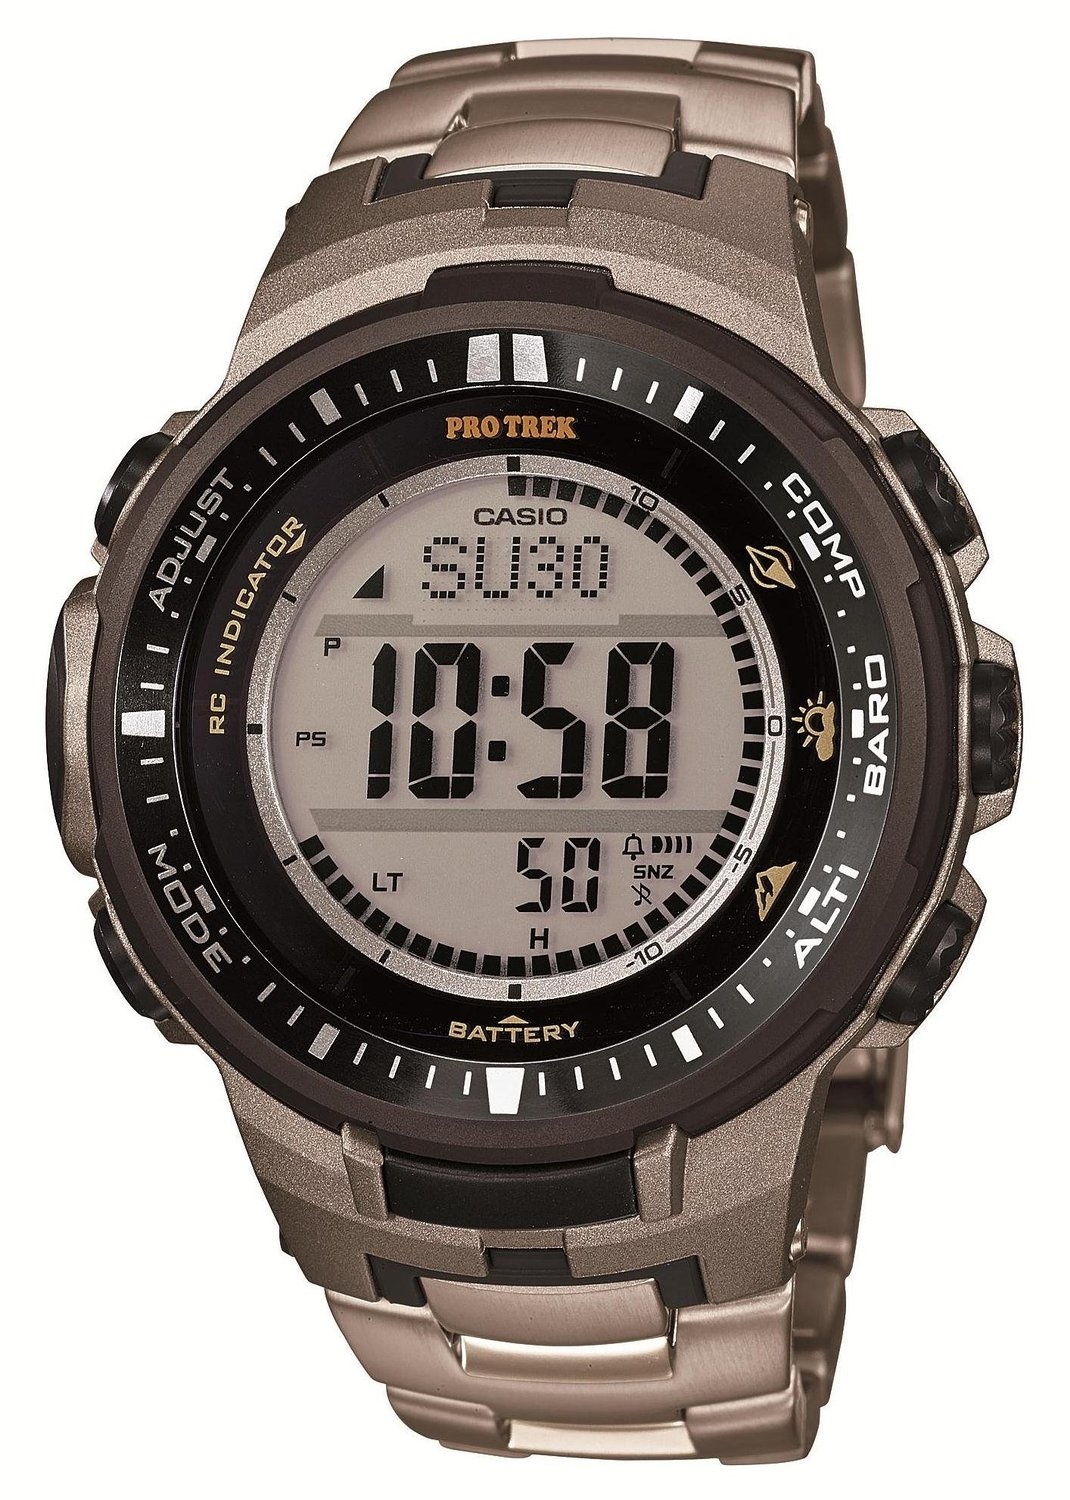 【クリックで詳細表示】[カシオ]Casio 腕時計 PROTREK トリプルセンサーVer.3搭載 マルチバンド6 電波ソーラー PRW-3000T-7JF メンズ